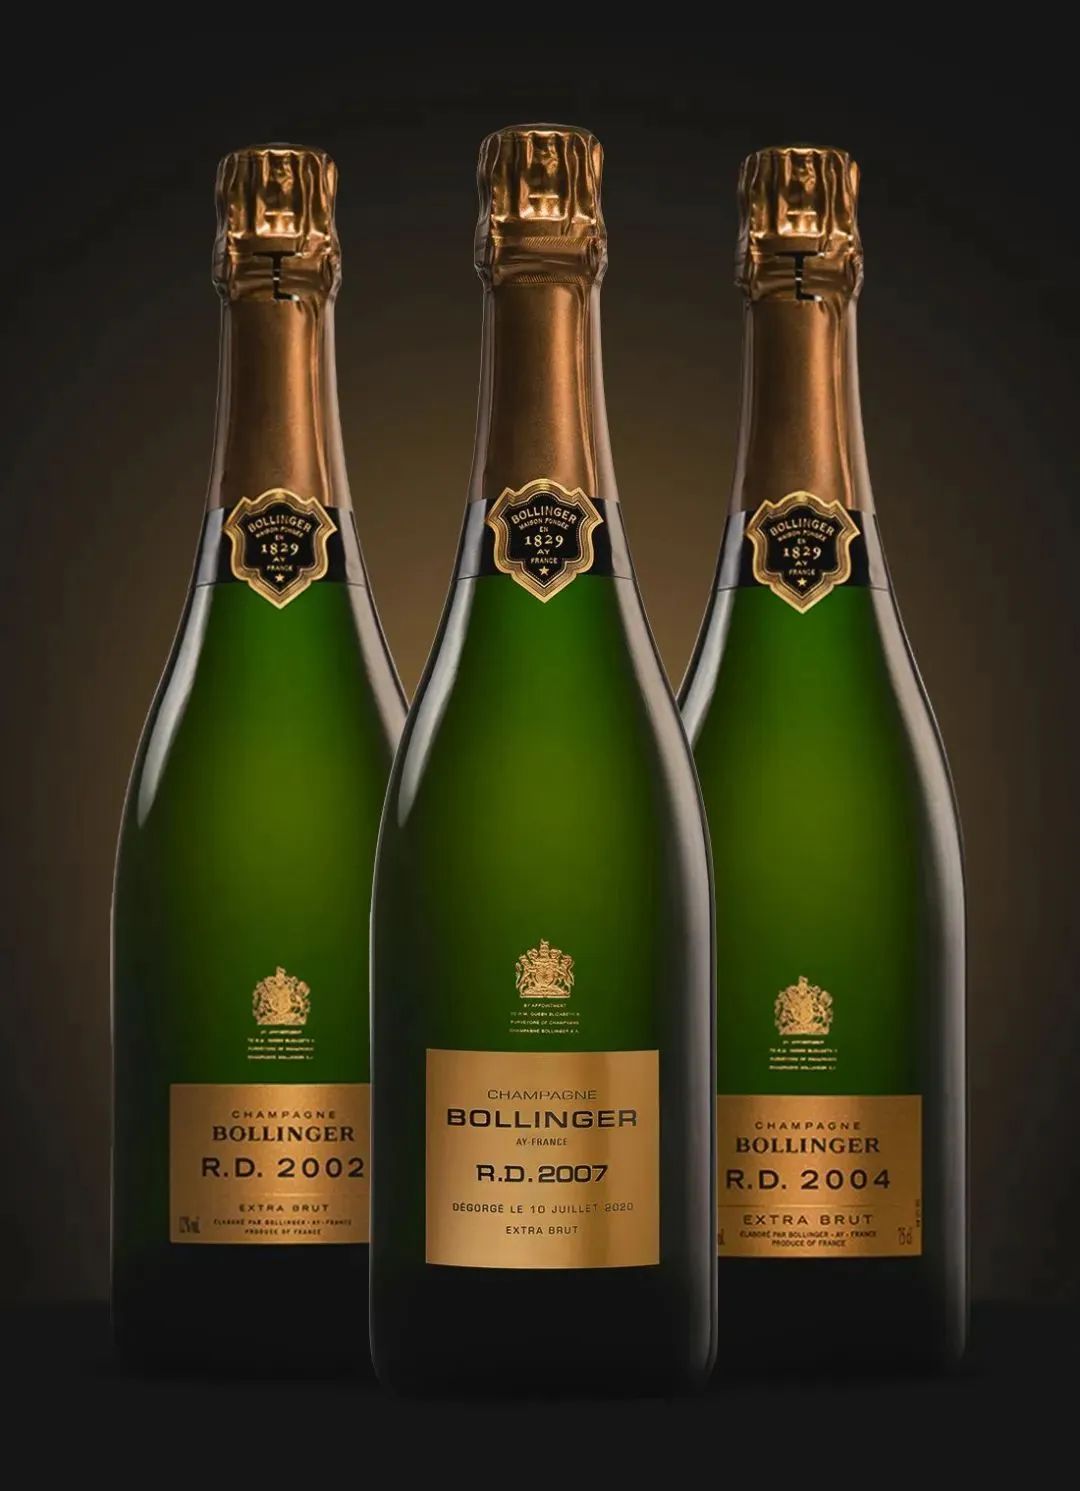 荐酒 | 007 邦德最爱，香槟区的典雅 “英伦范”